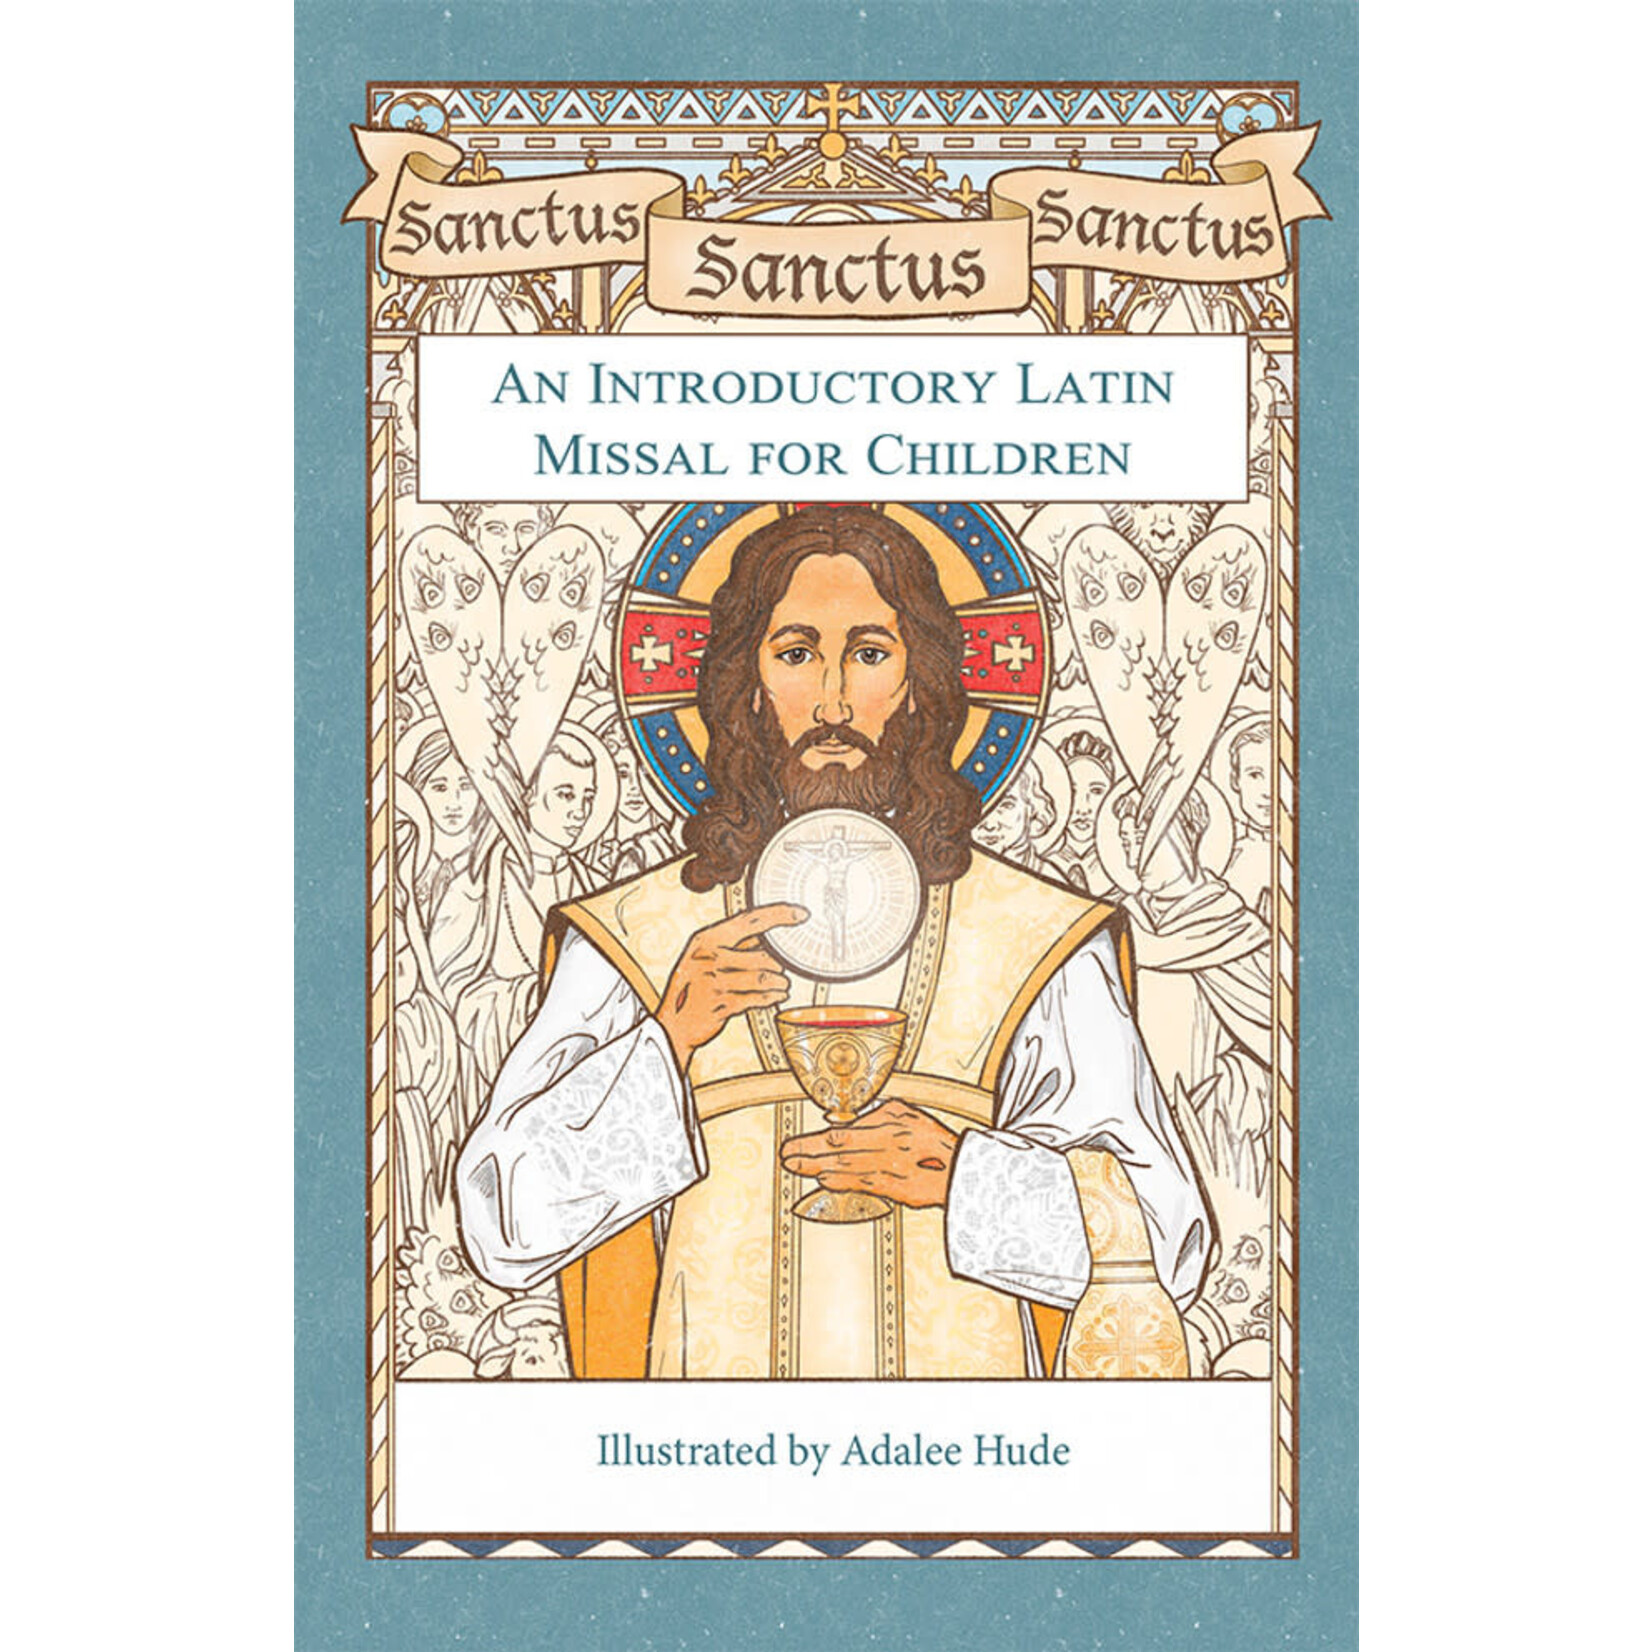 Sanctus, Sanctus, Sanctus- An Introductory Latin Missal for Children